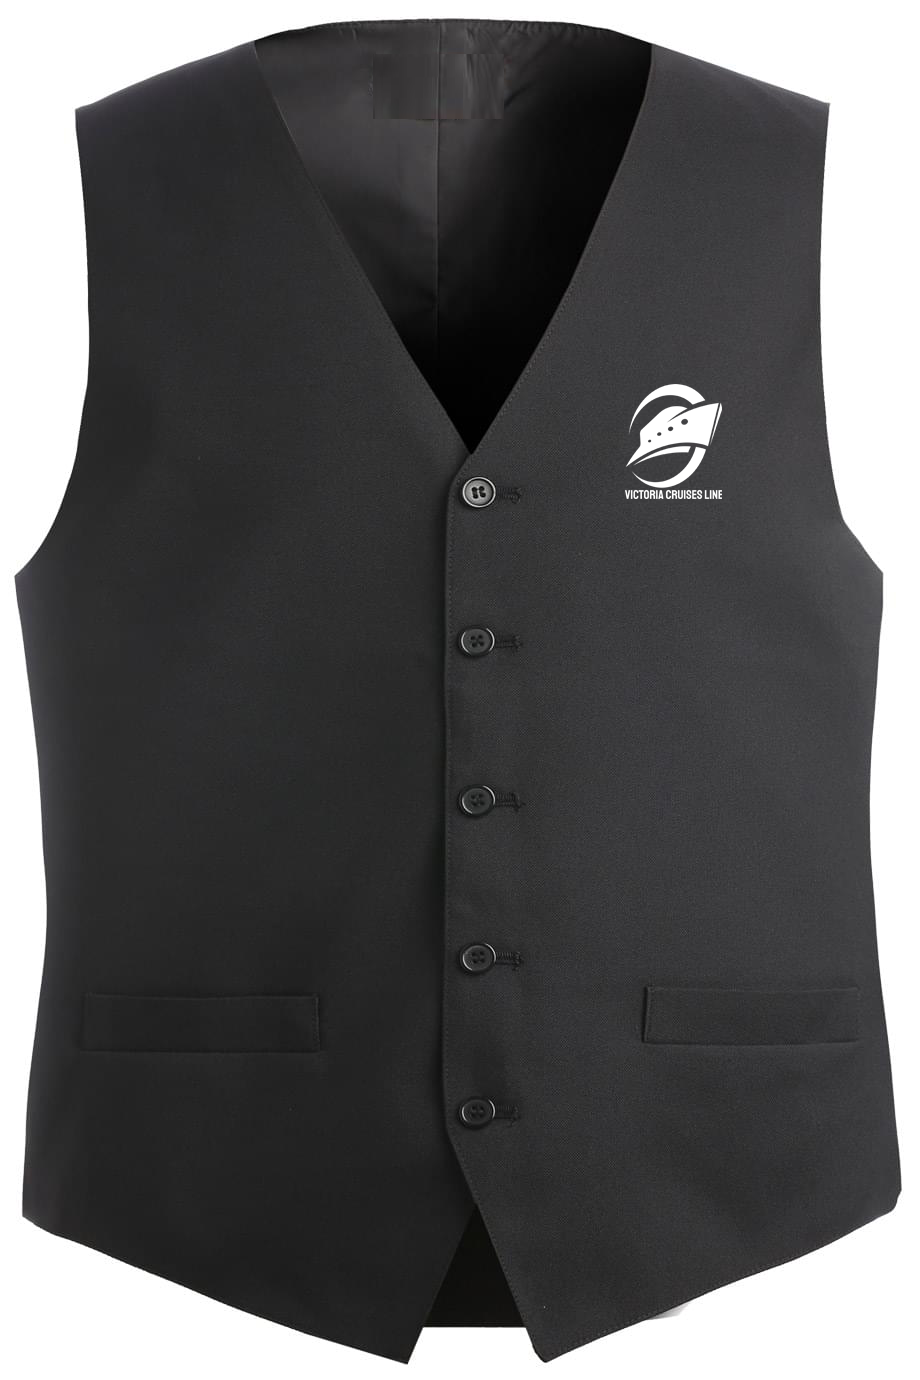 Men's Polyester Vest, Black [Left Chest / VCL All White]